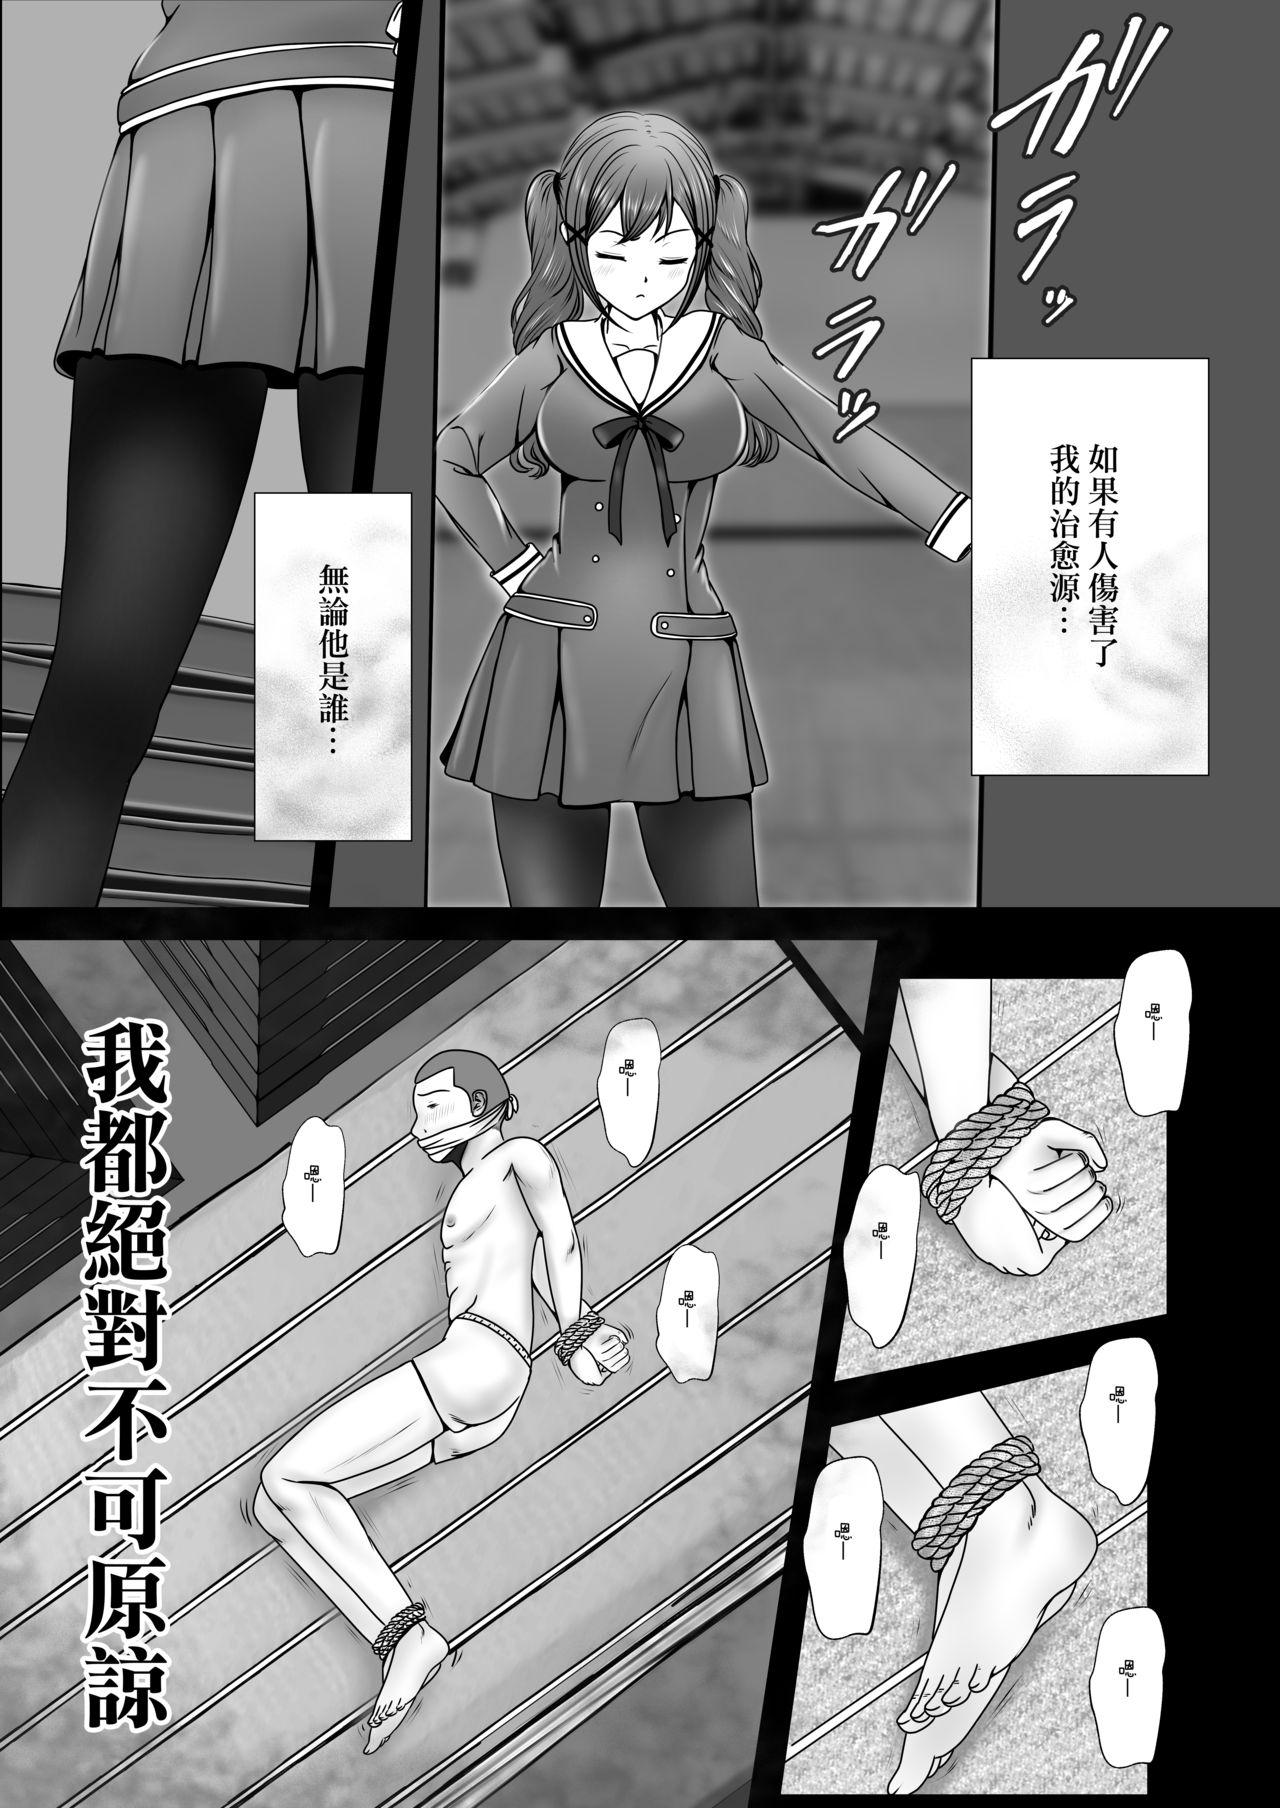 Hoàng tử Oagen đi vào cuộc săn lùng 2 (CSP6) Tác phẩm (tên tháng Tám mùa thu) (Hạm đội này - tàu này-) Bản dịch Trung Quốc (23 trang)-第1章-图片5